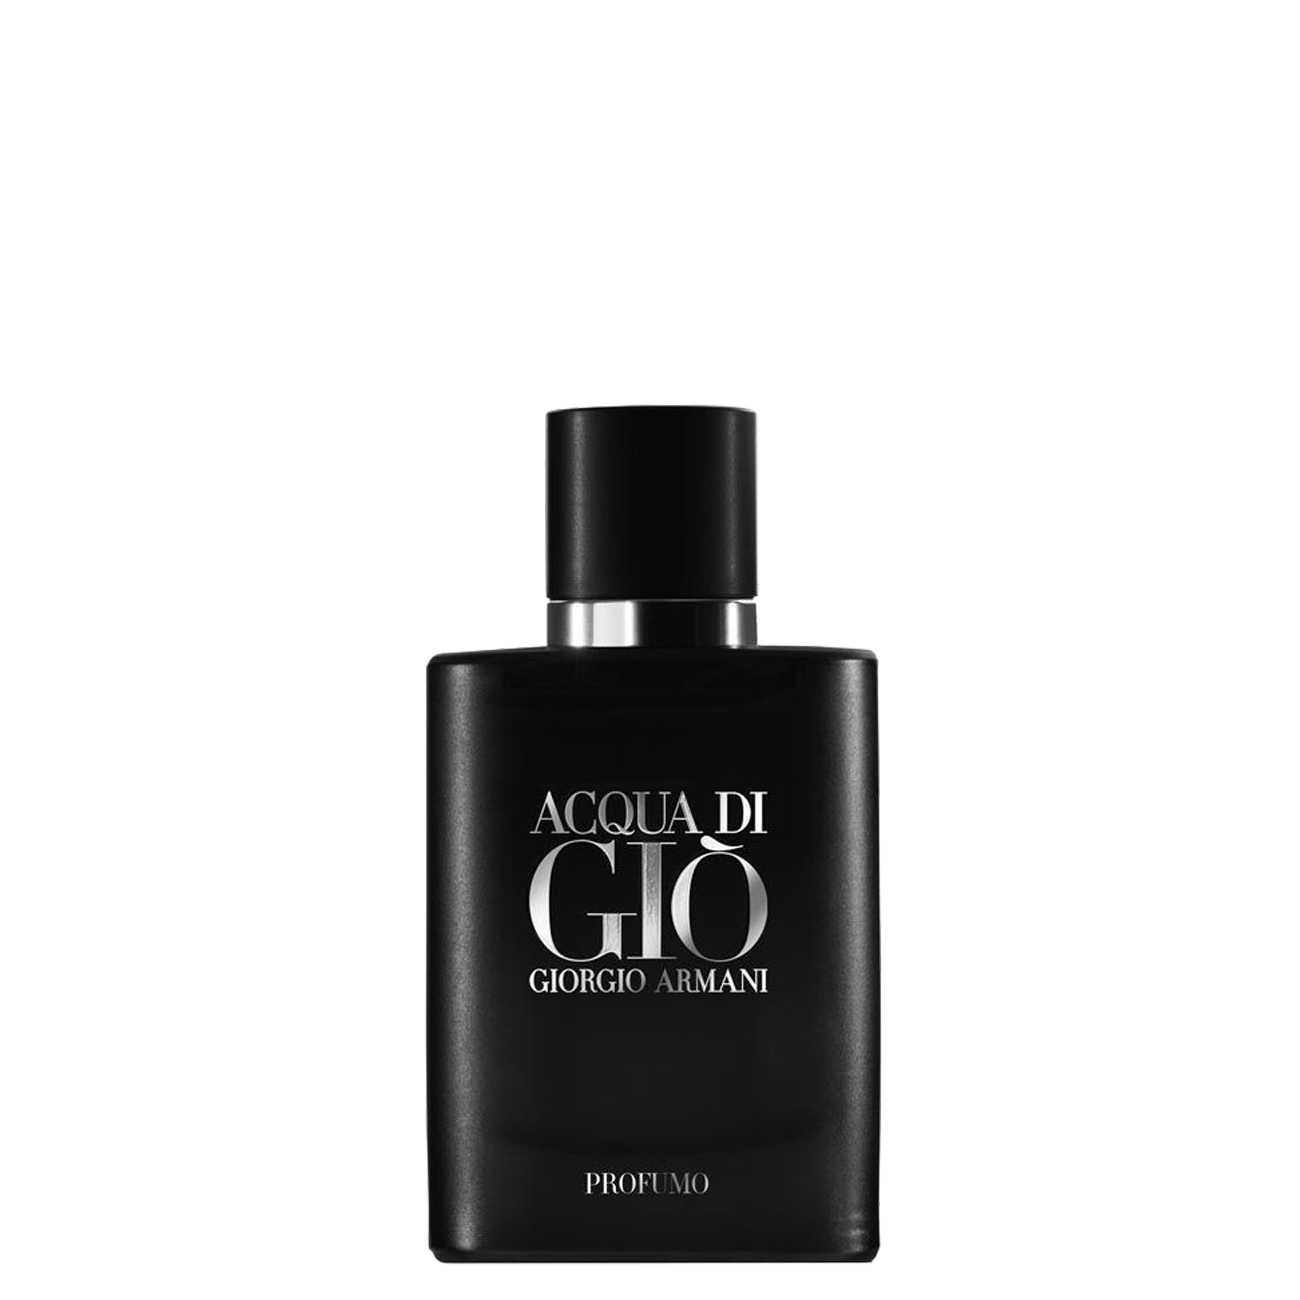 Apa de Parfum Giorgio Armani ACQUA DI GIO PROFUMO 40ml cu comanda online